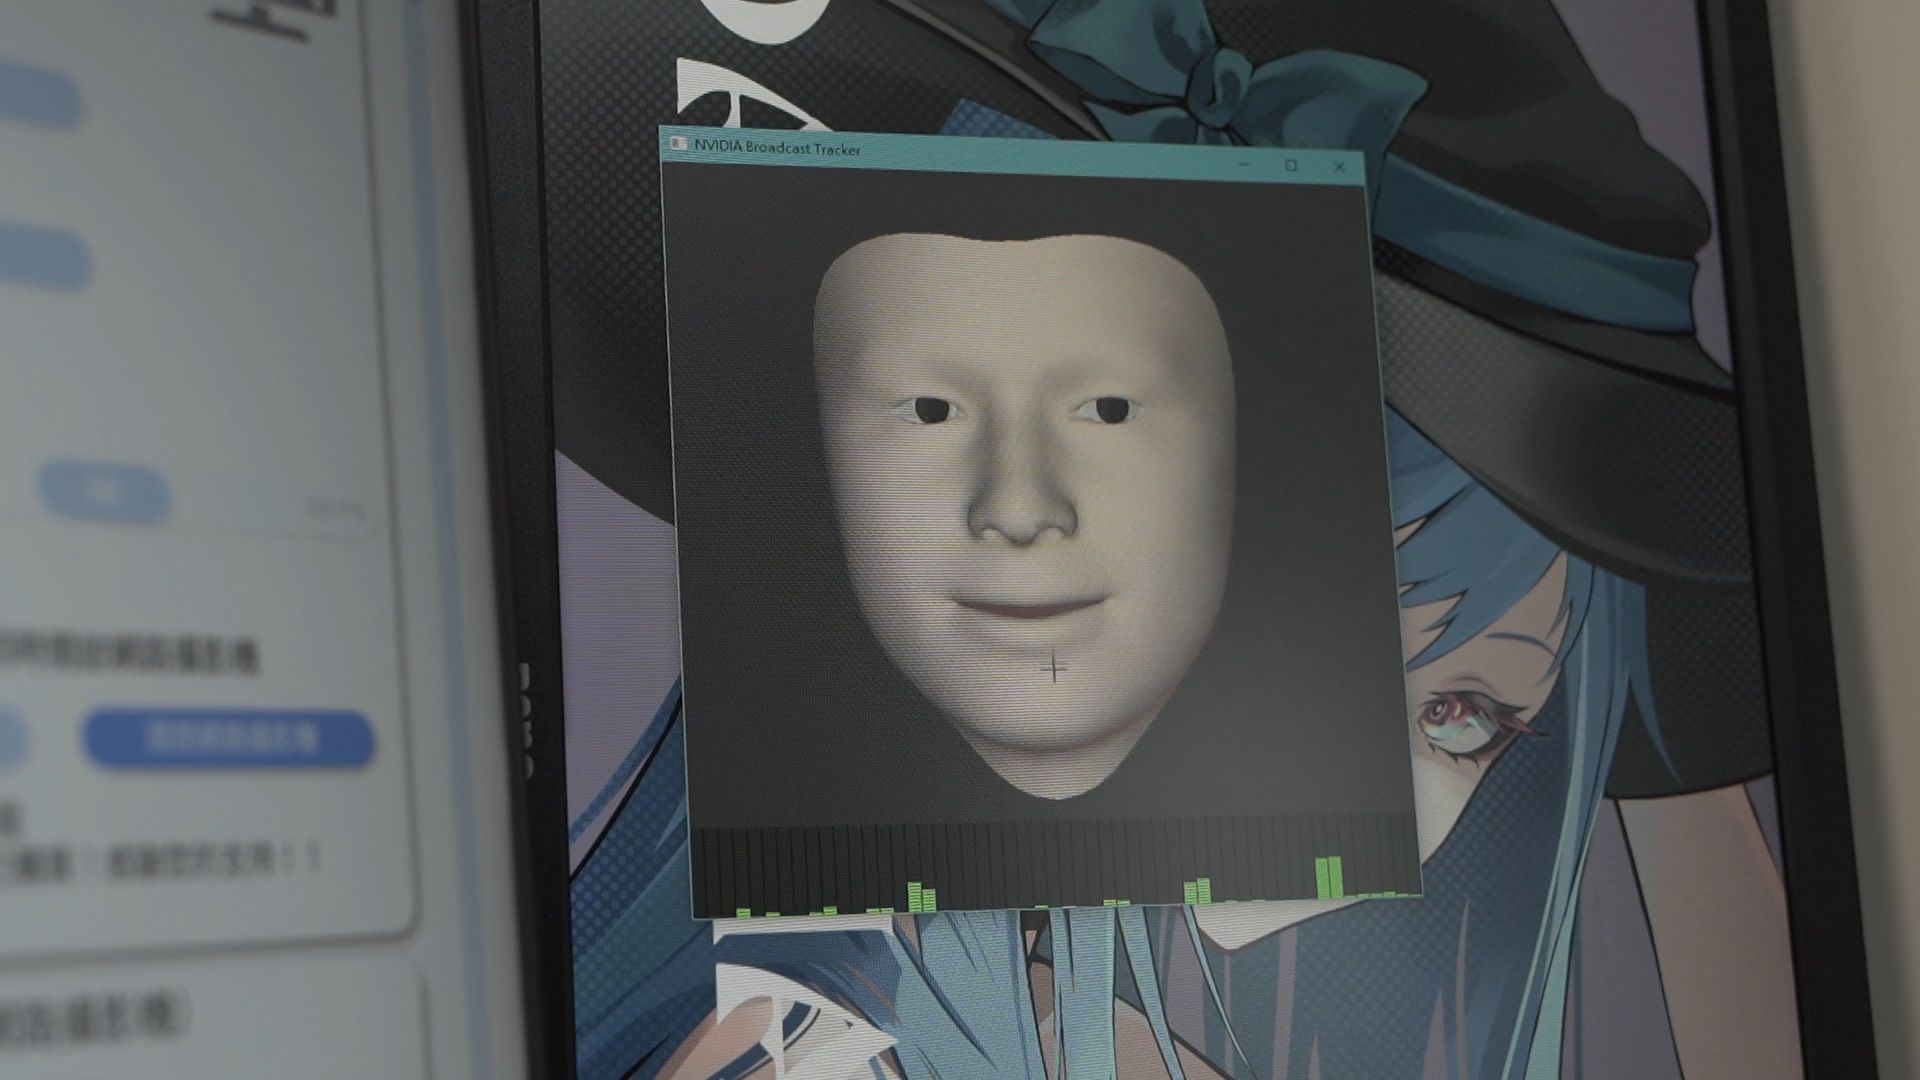 臉部動態捕捉軟體。